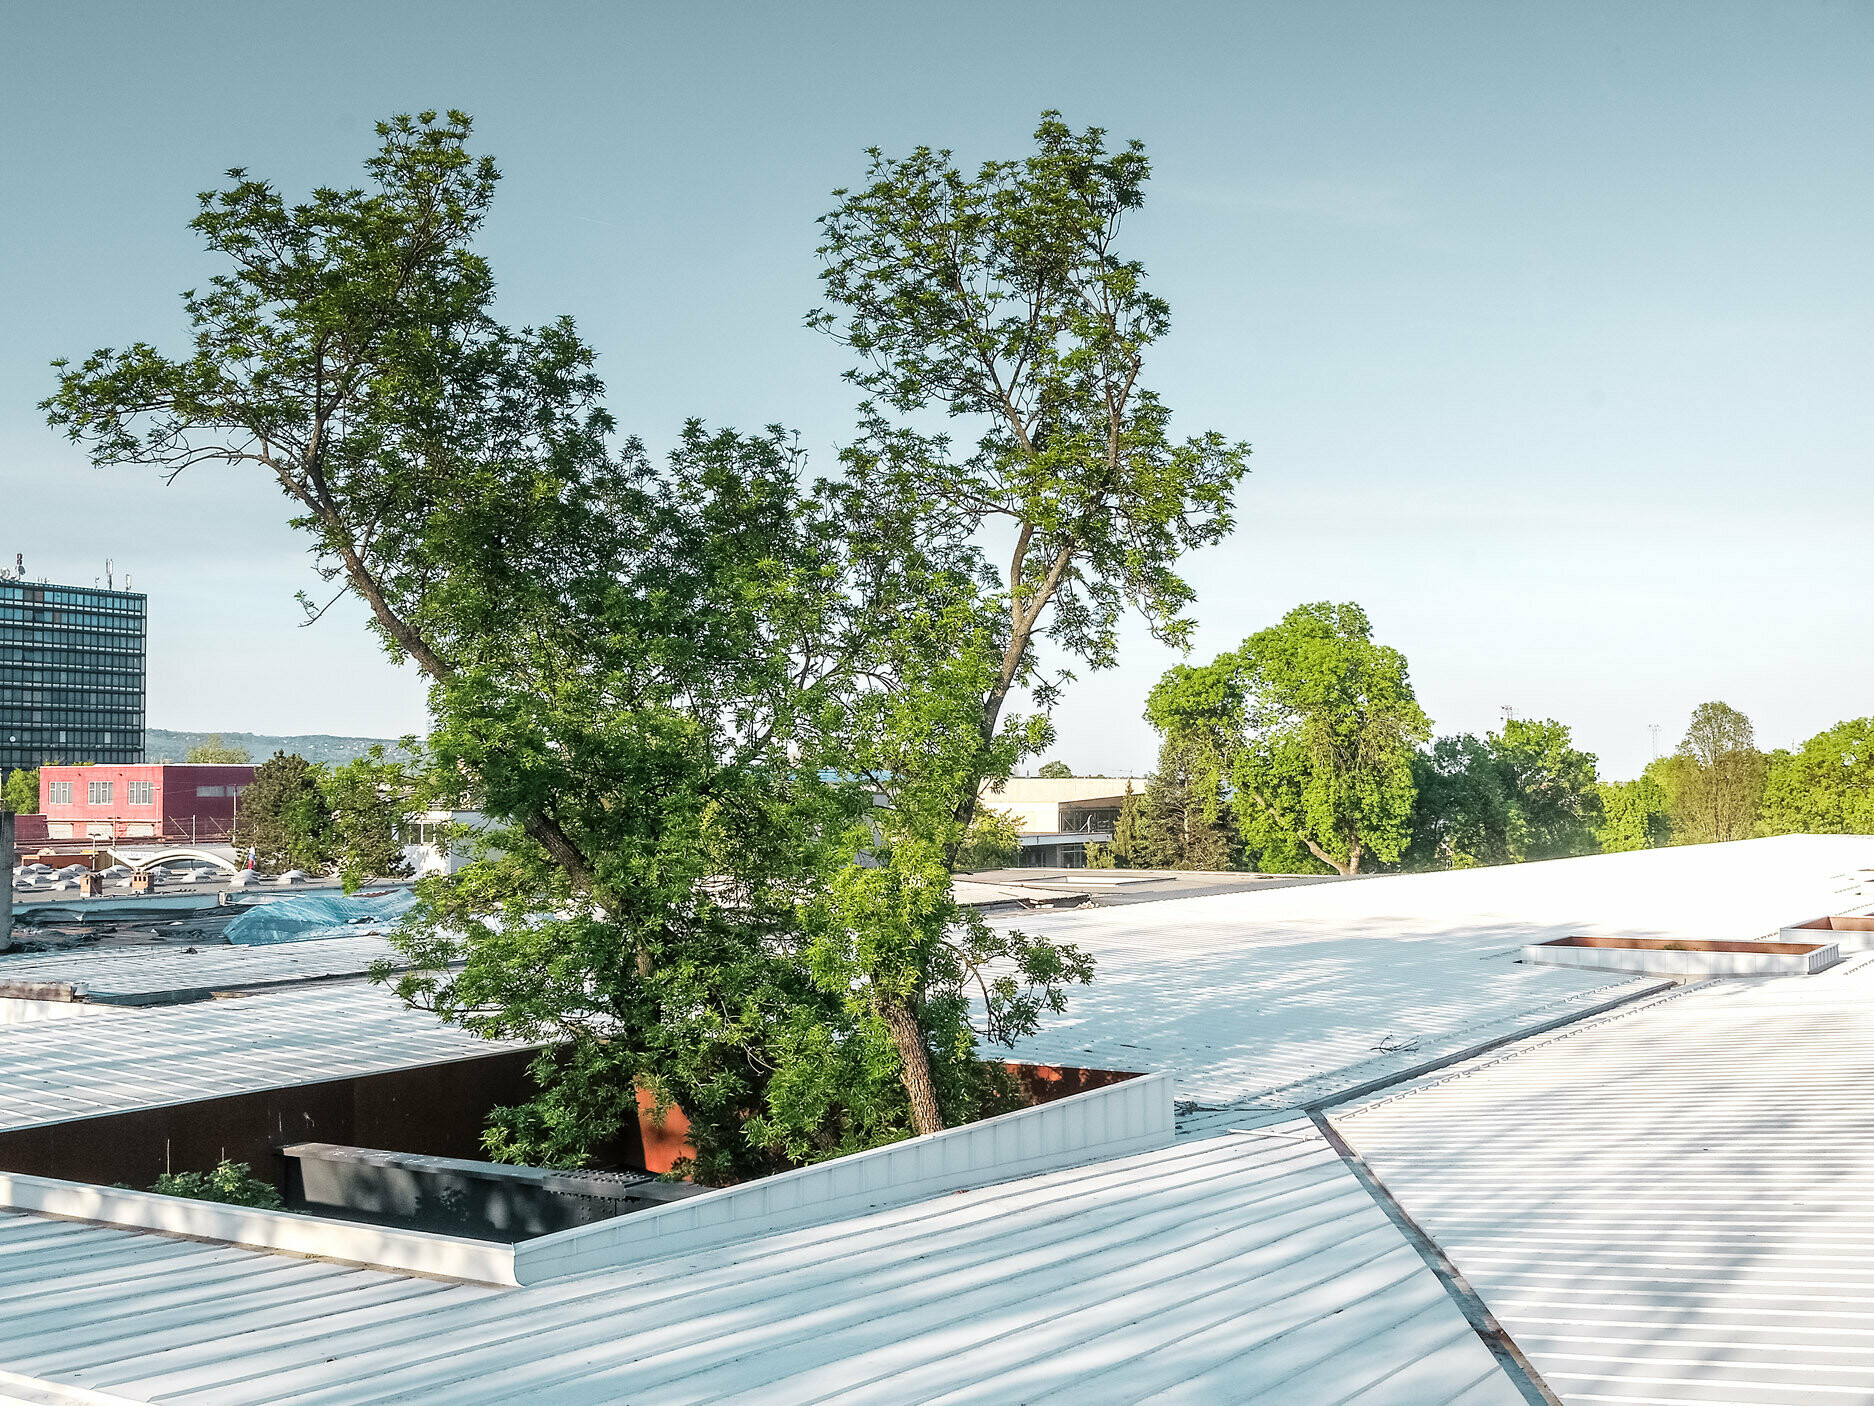 La photo montre un hall de gare routière en Croatie recouvert d'un toit Prefalz blanc de PREFA. De grands arbres percent le toit à plusieurs endroits, conférant à la structure un aspect architectural particulièrement original. À l'arrière-plan, on peut voir d'autres bâtiments et une grande tour de bureaux. La photo illustre la combinaison d'une architecture fonctionnelle et d'un environnement naturel, le toit blanc et le vert des arbres créant un contraste saisissant.